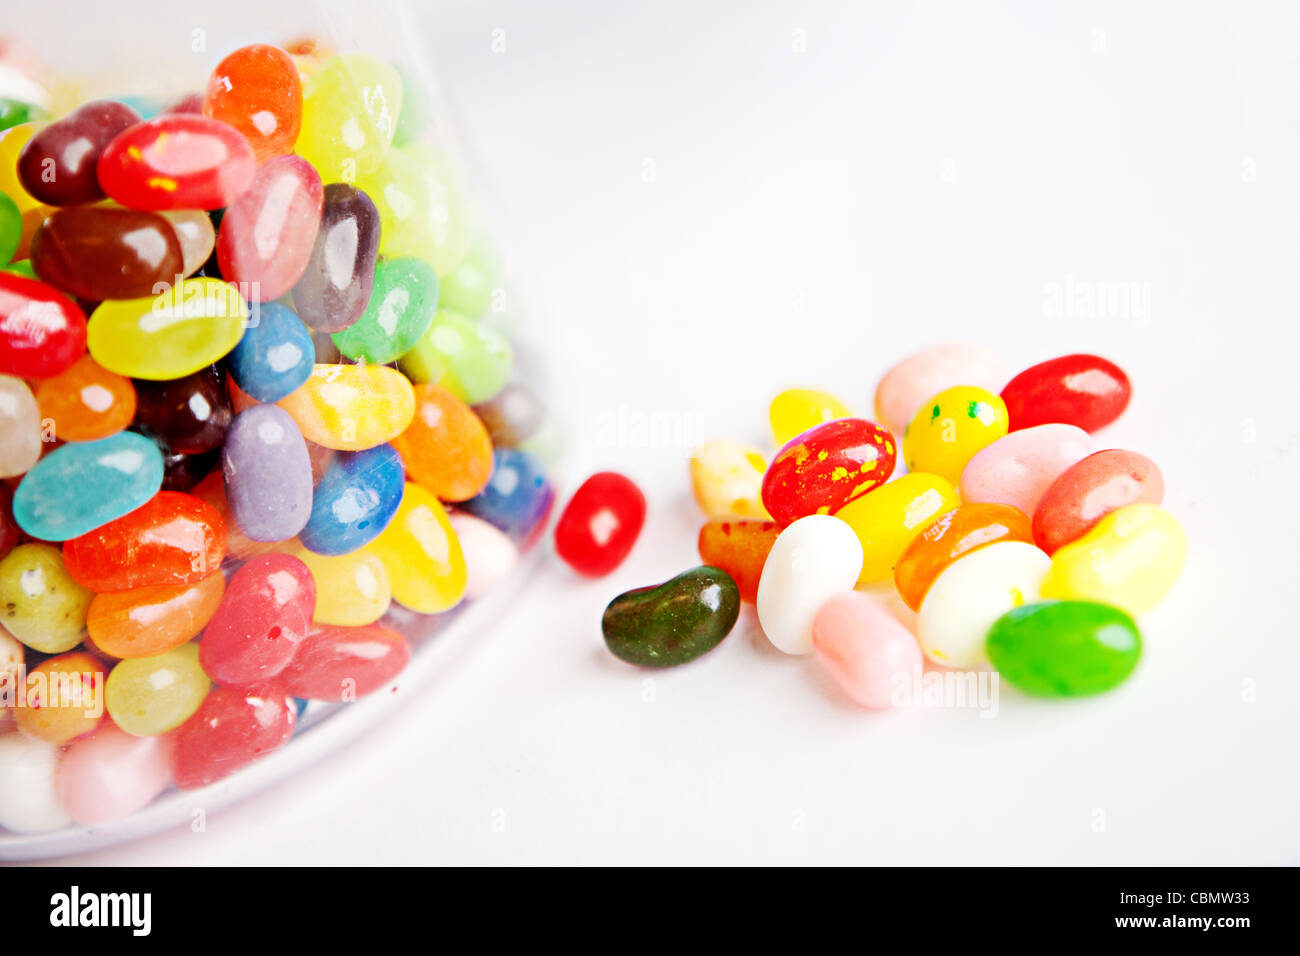 Une poignée de bonbons jelly bean placé à côté d'un bocal en verre de jelly beans Banque D'Images